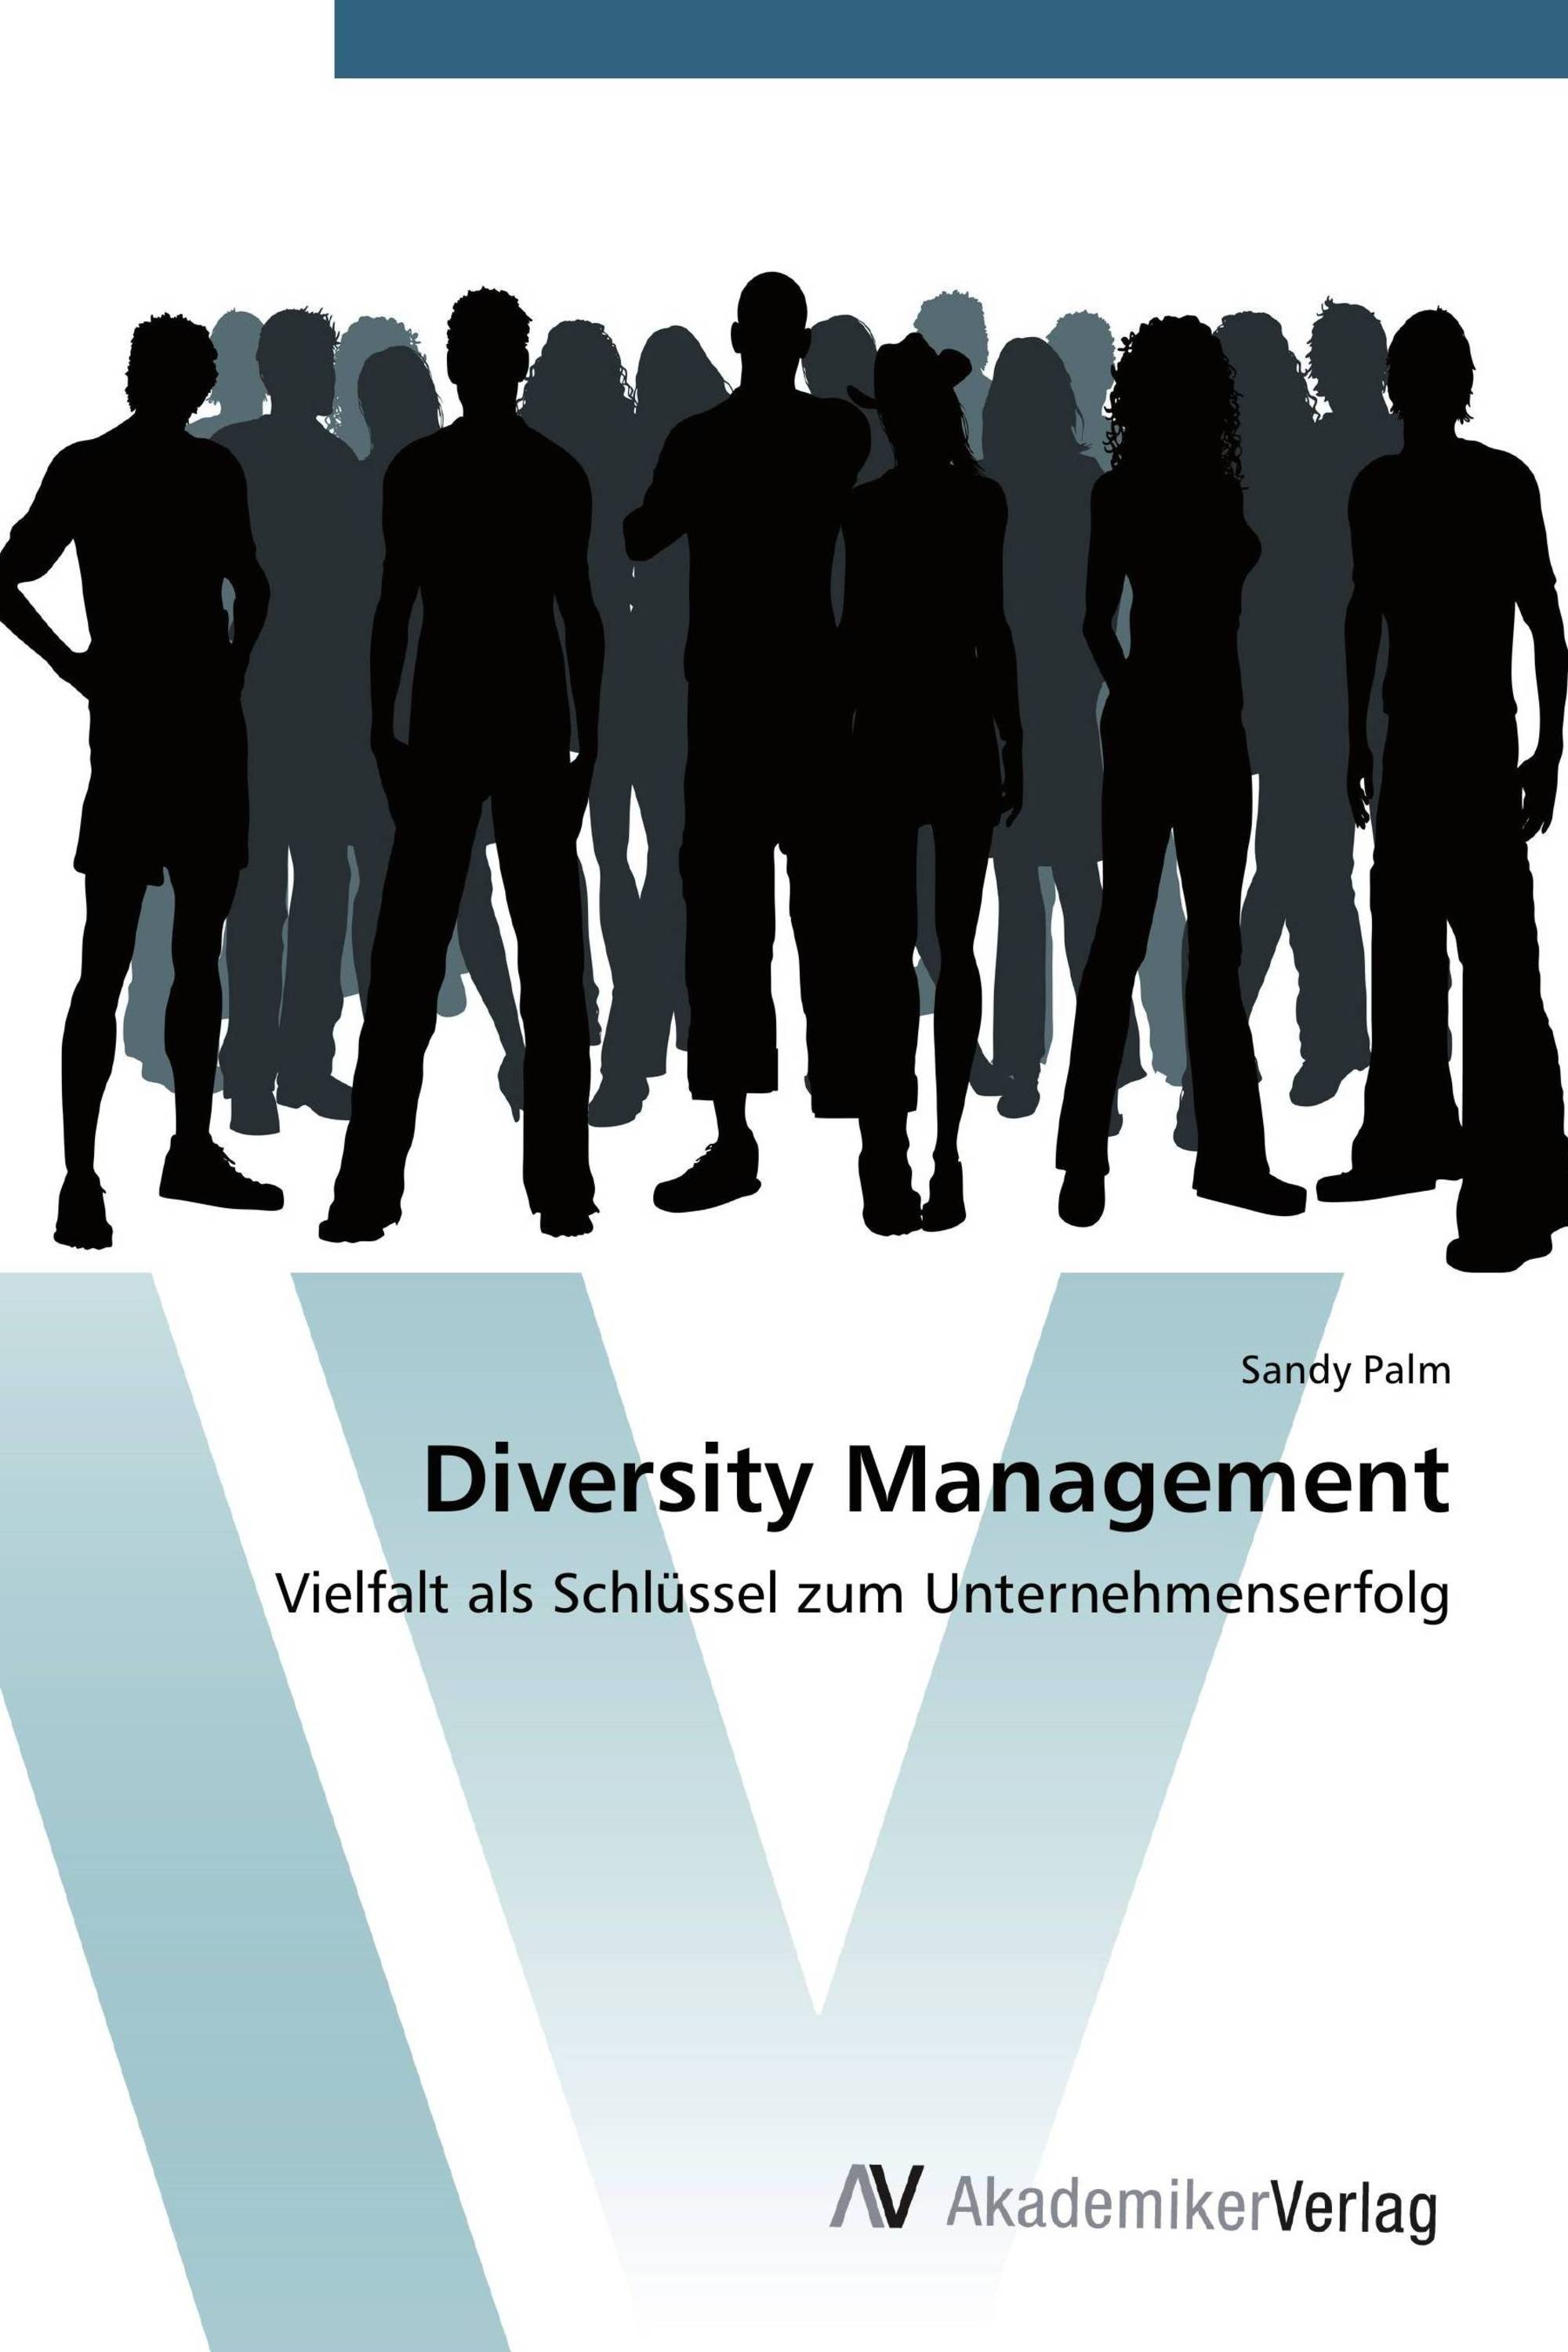 diversity management thesis